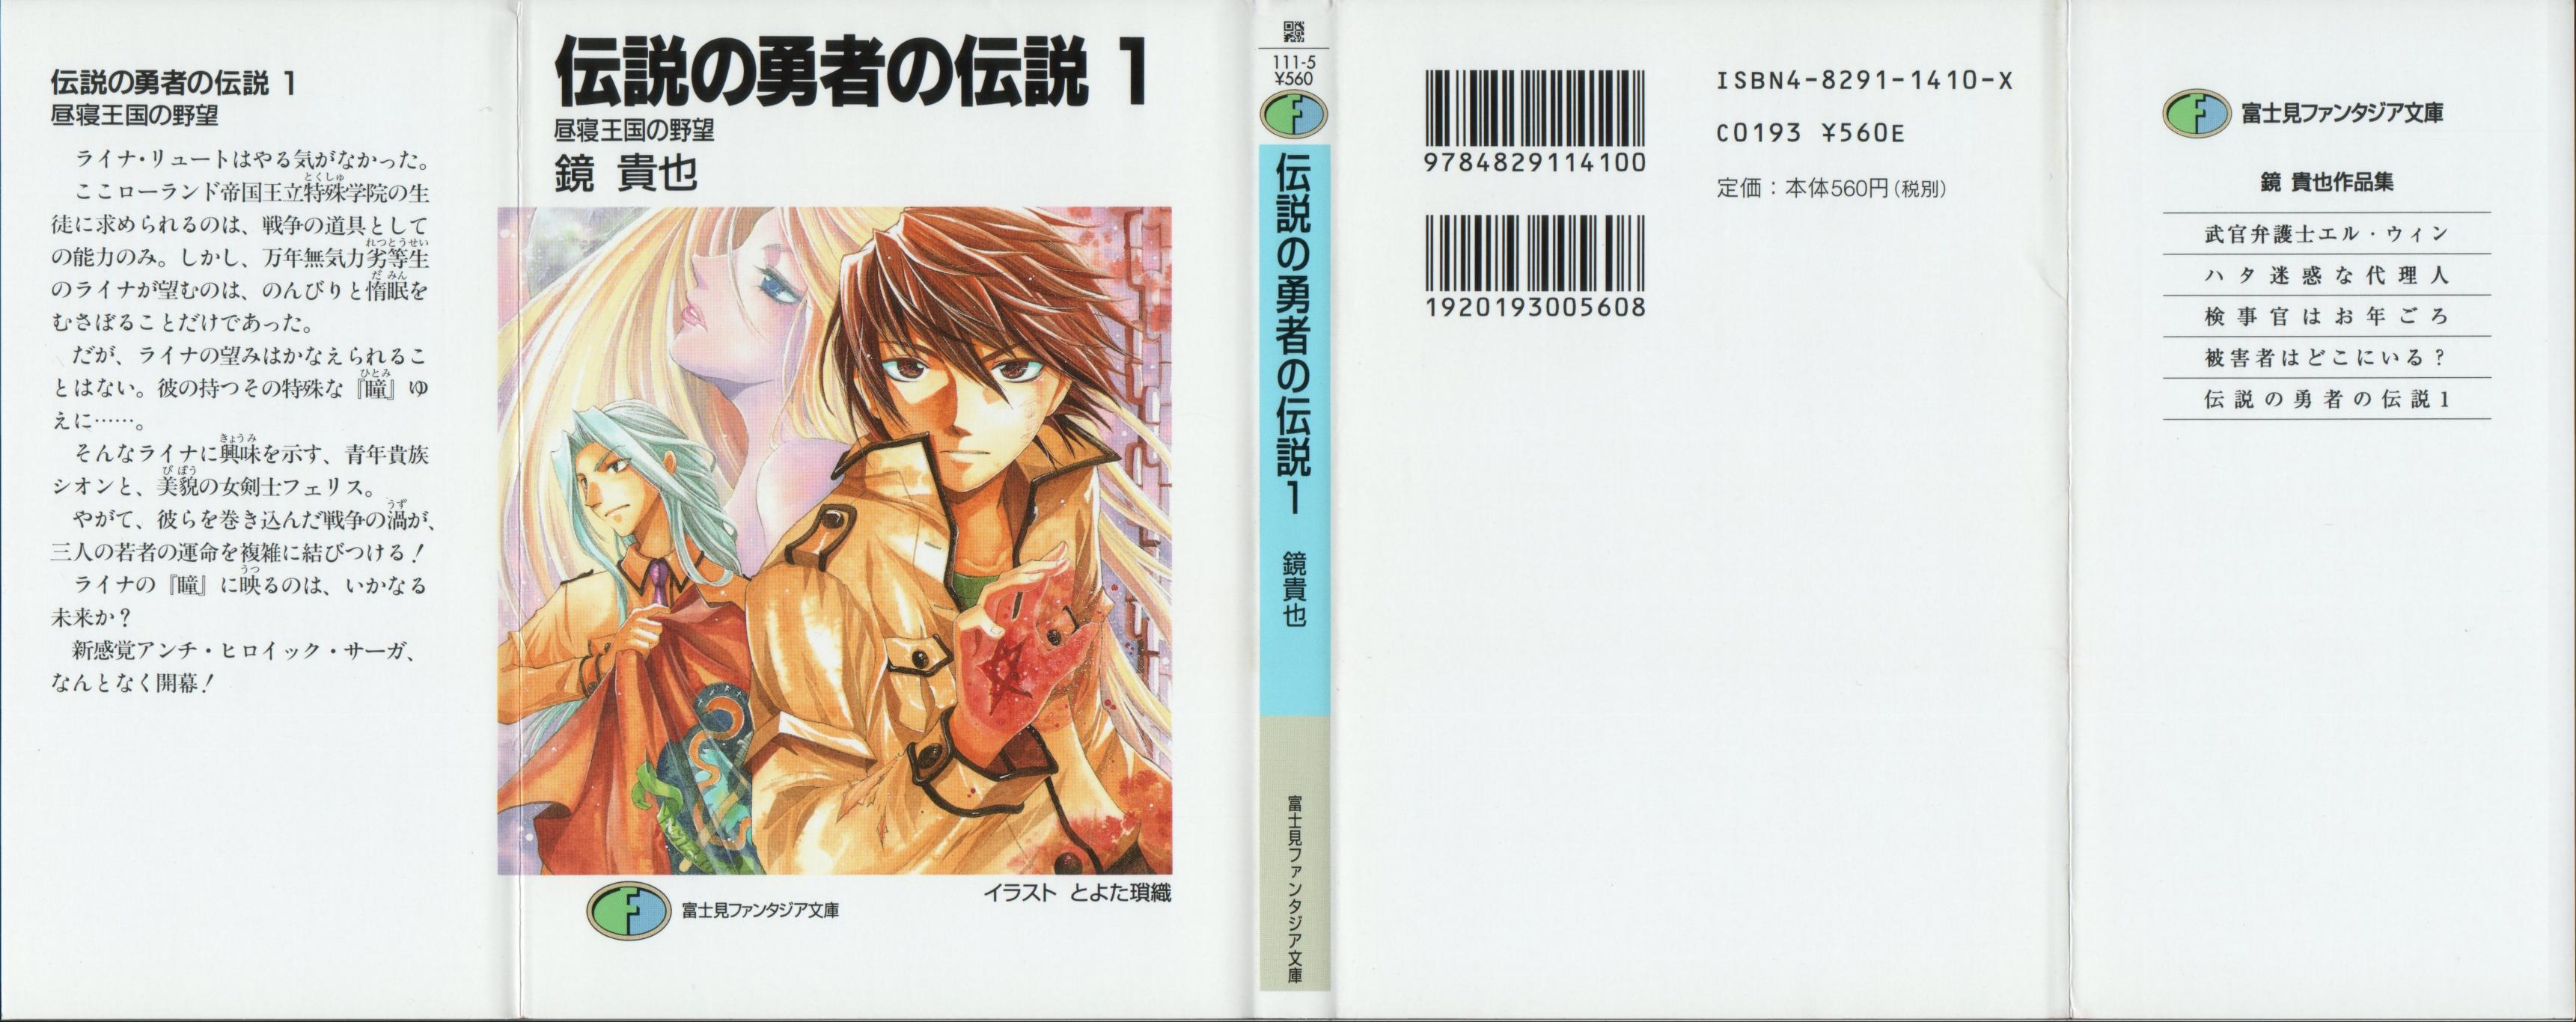 NOVEL: Densetsu no Yuusha no Densetsu : Free Download, Borrow, and